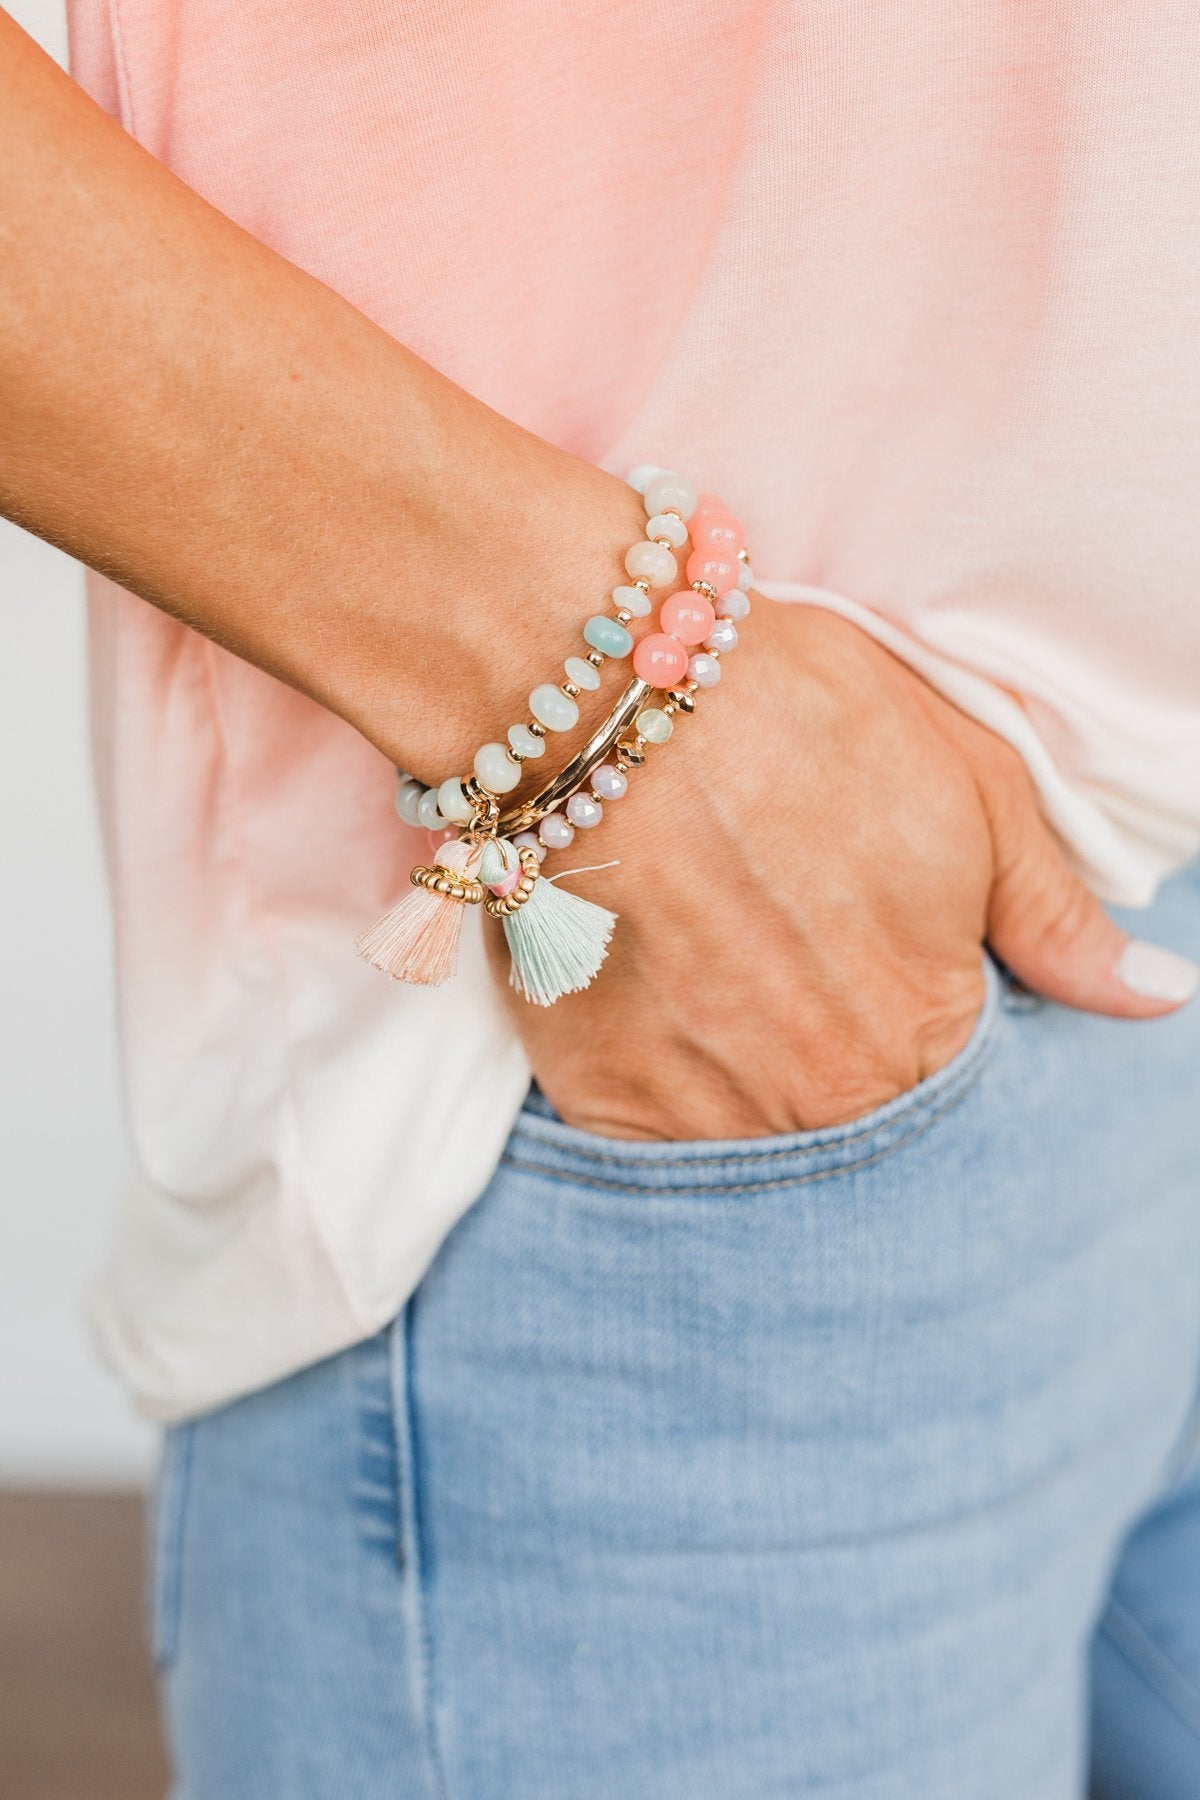 Buy Turquoise Gemstone Bracelet, Beaded Bracelet, Beaded Tassel Bracelet,  Bracelets for Women Gift for Her Online in India - Etsy